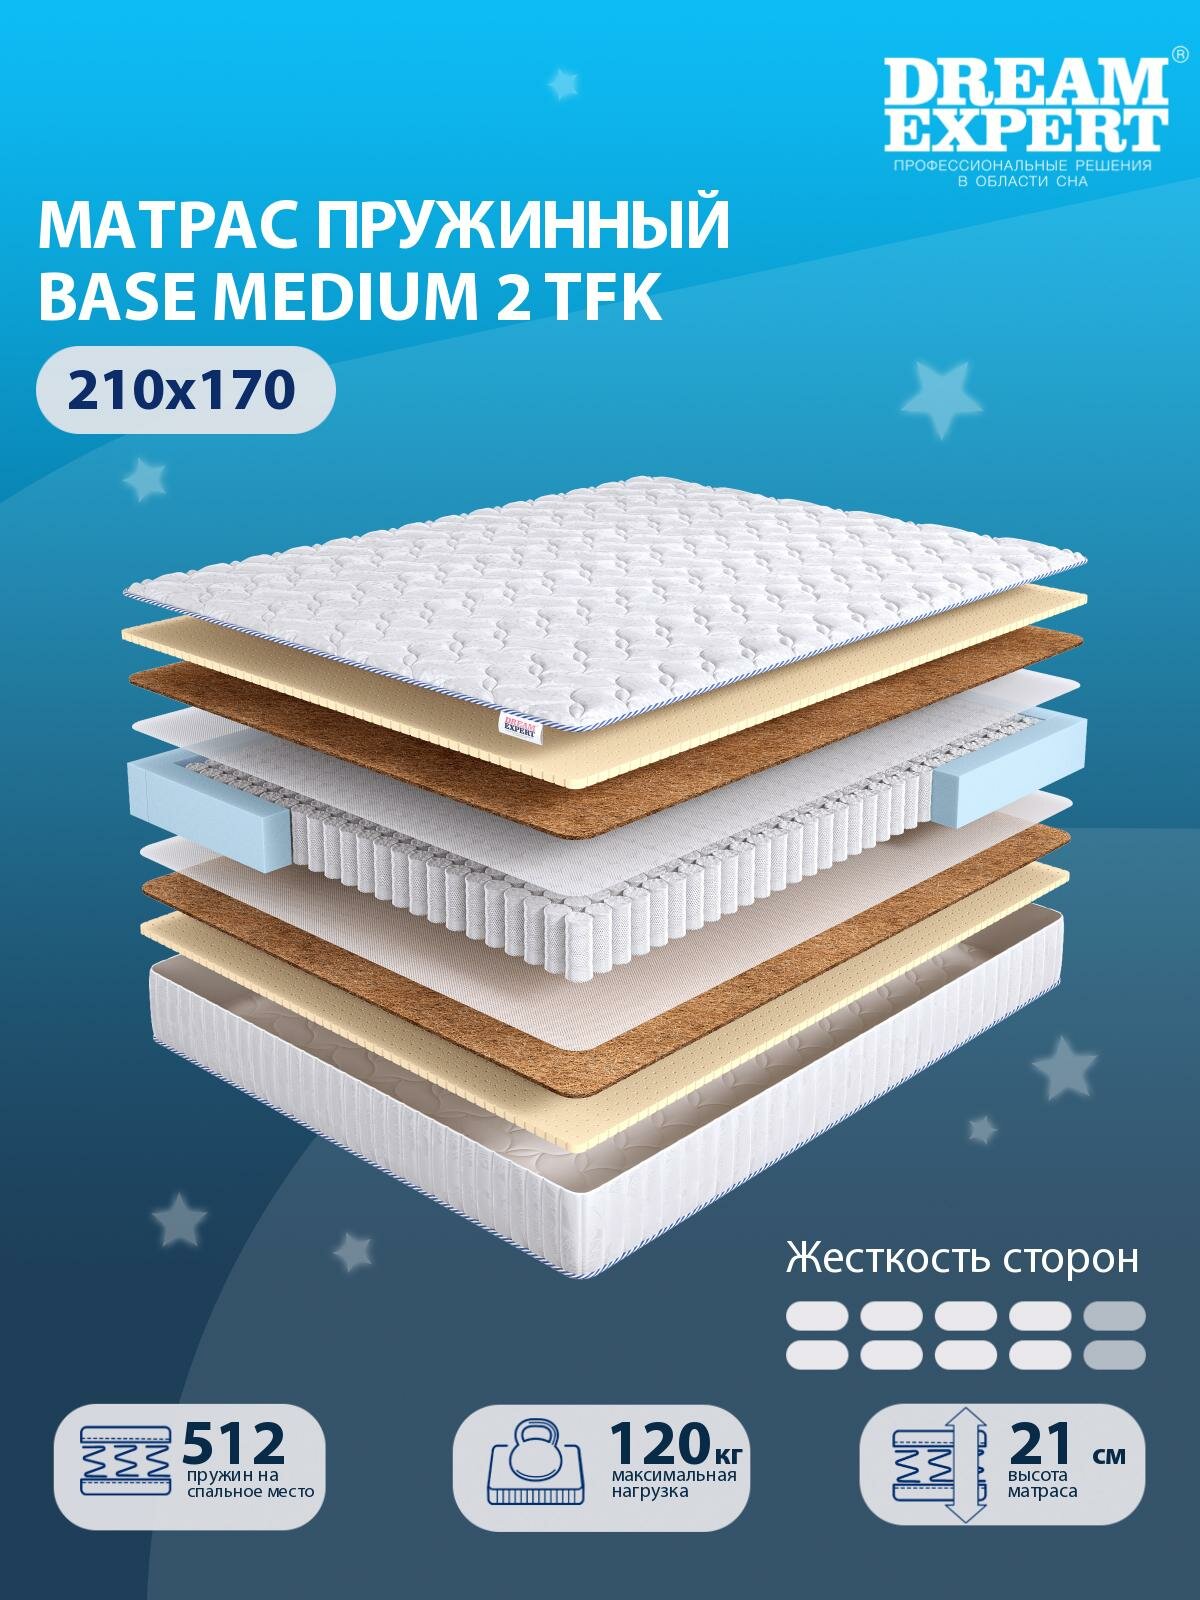 Матрас DreamExpert Base Medium 2 TFK выше средней жесткости, двуспальный, независимый пружинный блок, на кровать 210x170